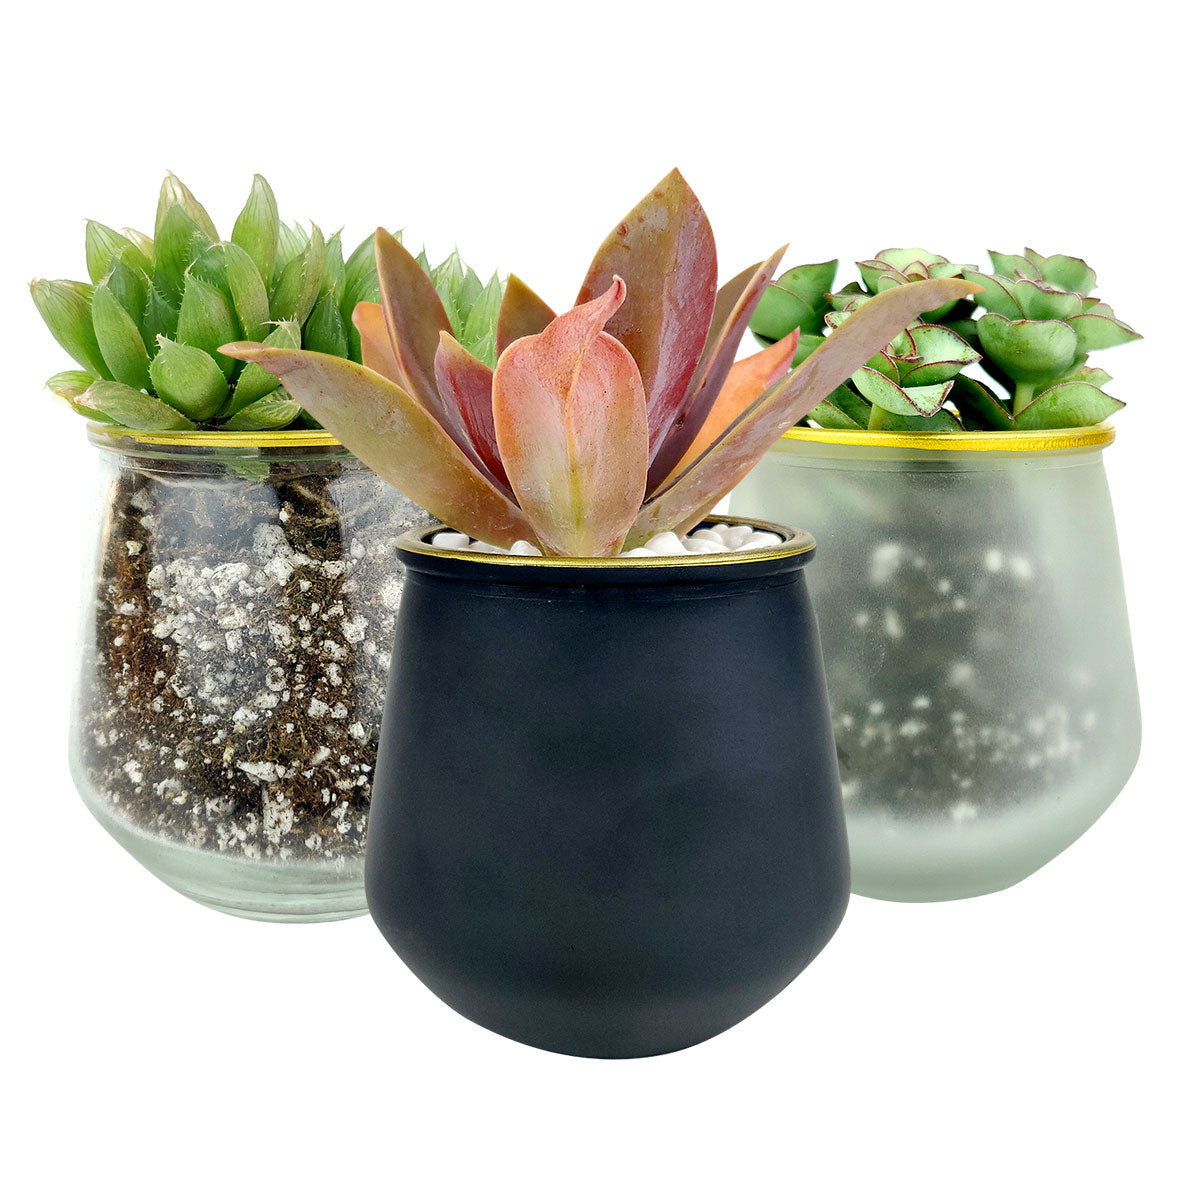 Pot for sale, Mini pot for succulent, Succulent pot decor ideas, 3 Pack Gold Rim Pots, Flower pot for sale, glass pots for planting, succulent gift for holiday